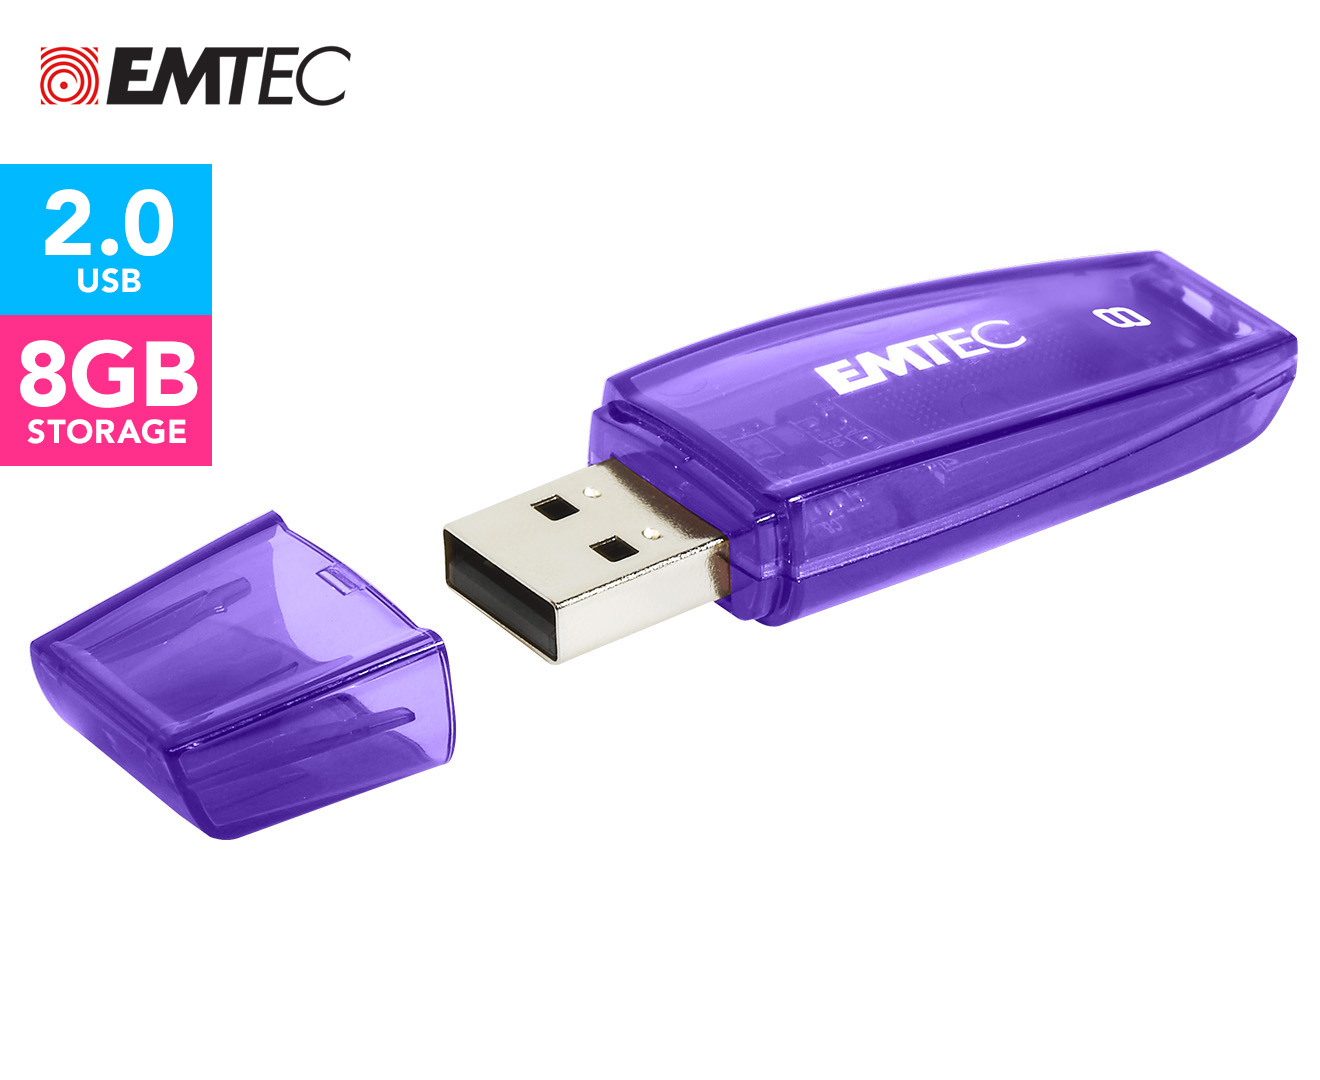 EMTEC C410 Color Mix USB 2.0 8GB Flash Drive - Purple